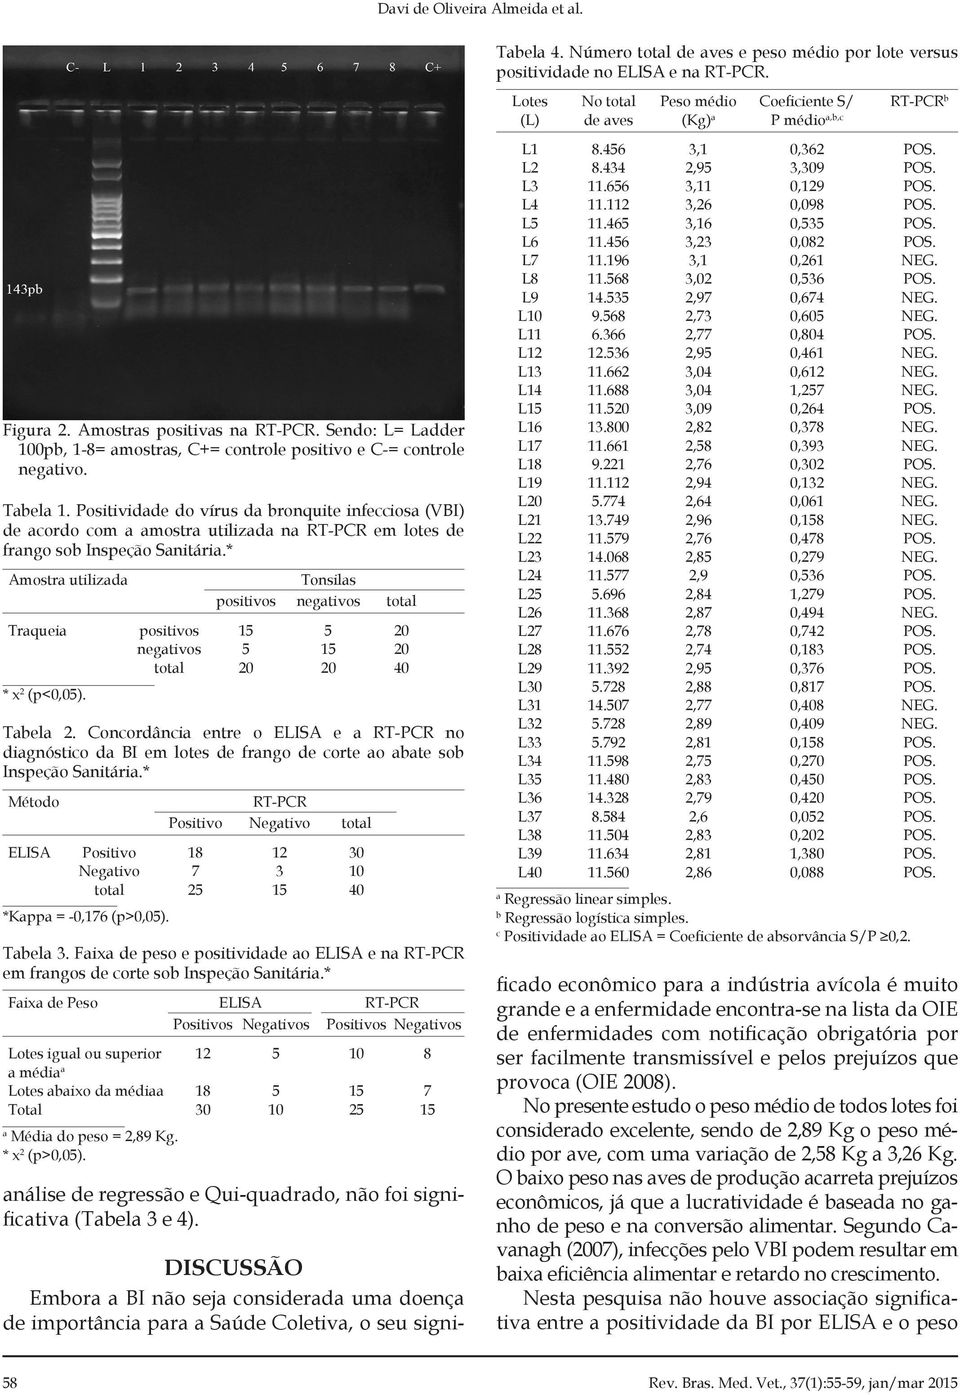 Tabela 1. Positividade do vírus da bronquite infecciosa (VBI) de acordo com a amostra utilizada na em lotes de frango sob Inspeção Sanitária.